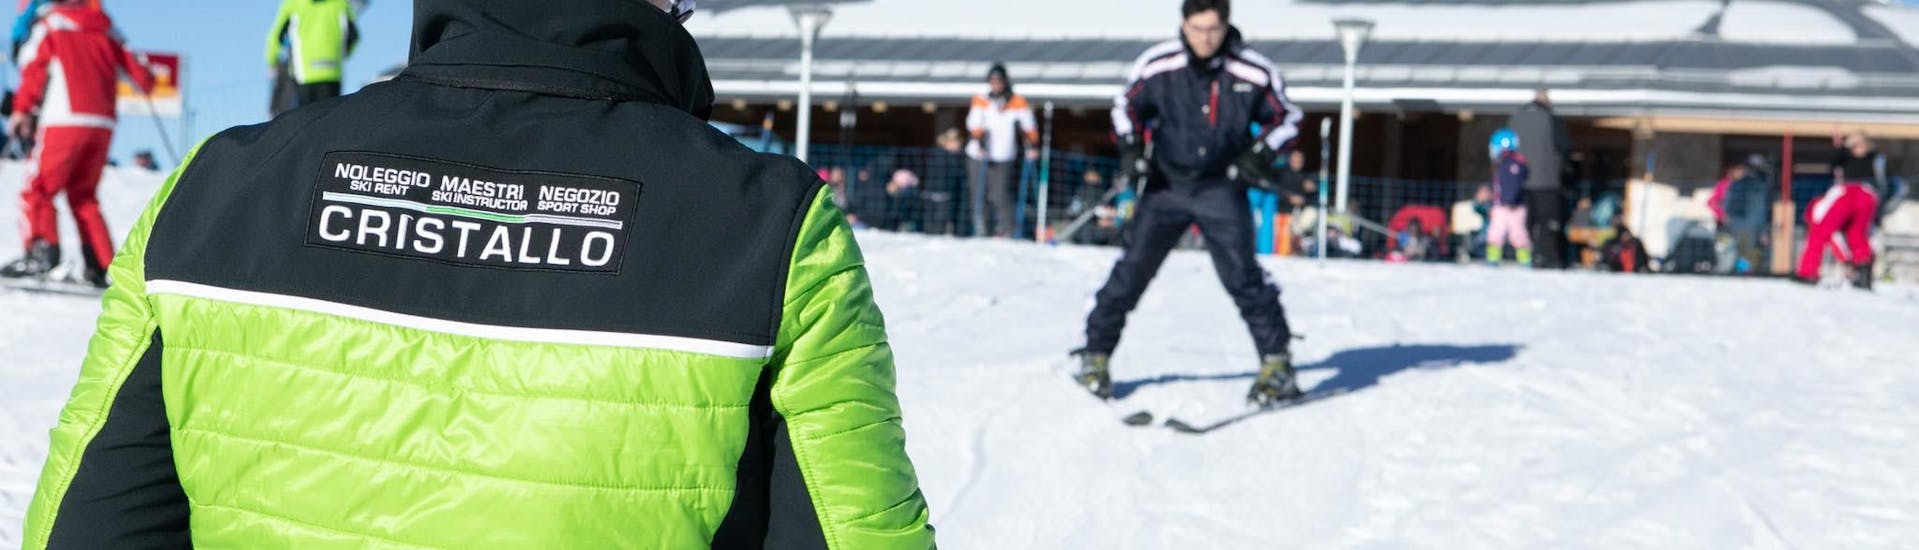 A instructor of Maestri di Sci e Snowboard Cristallo - Monte Bondone is looking at a participant in the ski lessons in the ski resort of Monte Bondone.